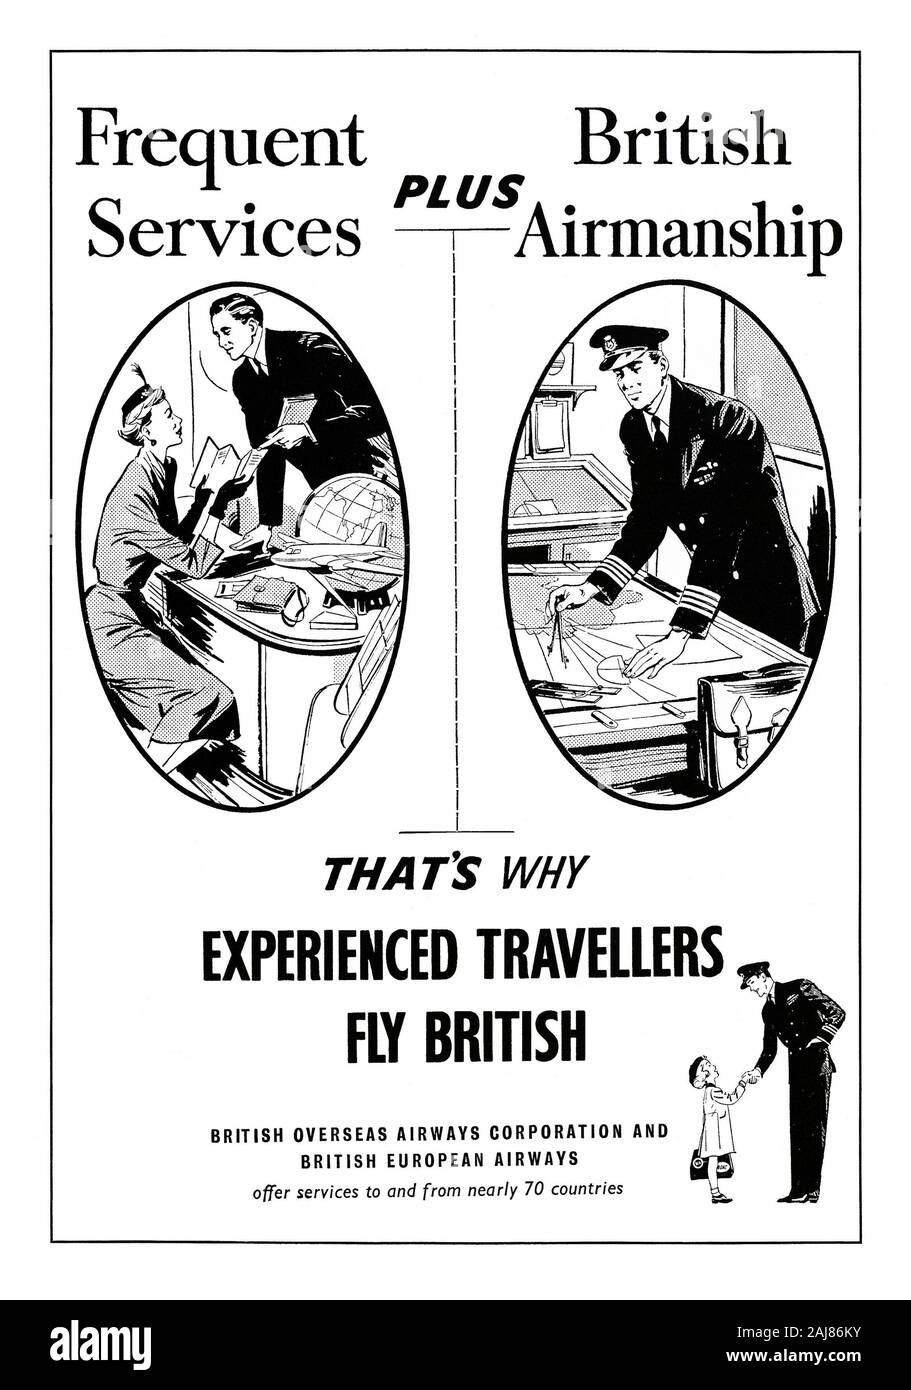 Annuncio per un British Overseas Airways Corporation (BOAC) e British European Airways (BEA), 1951. Questo è apparso nella sfera magazine nel 2 Giugno 1951. Le tre illustrazioni includono una donna di ispezionare la letteratura di viaggio, un pilota riportando il suo corso su un grafico e una bambina stringe la mano con un pilota. La copia enfatizza i loro servizi frequenti e airmanship del suo personale. Le due imprese sono state in seguito a diventare British Airways (BA). Foto Stock